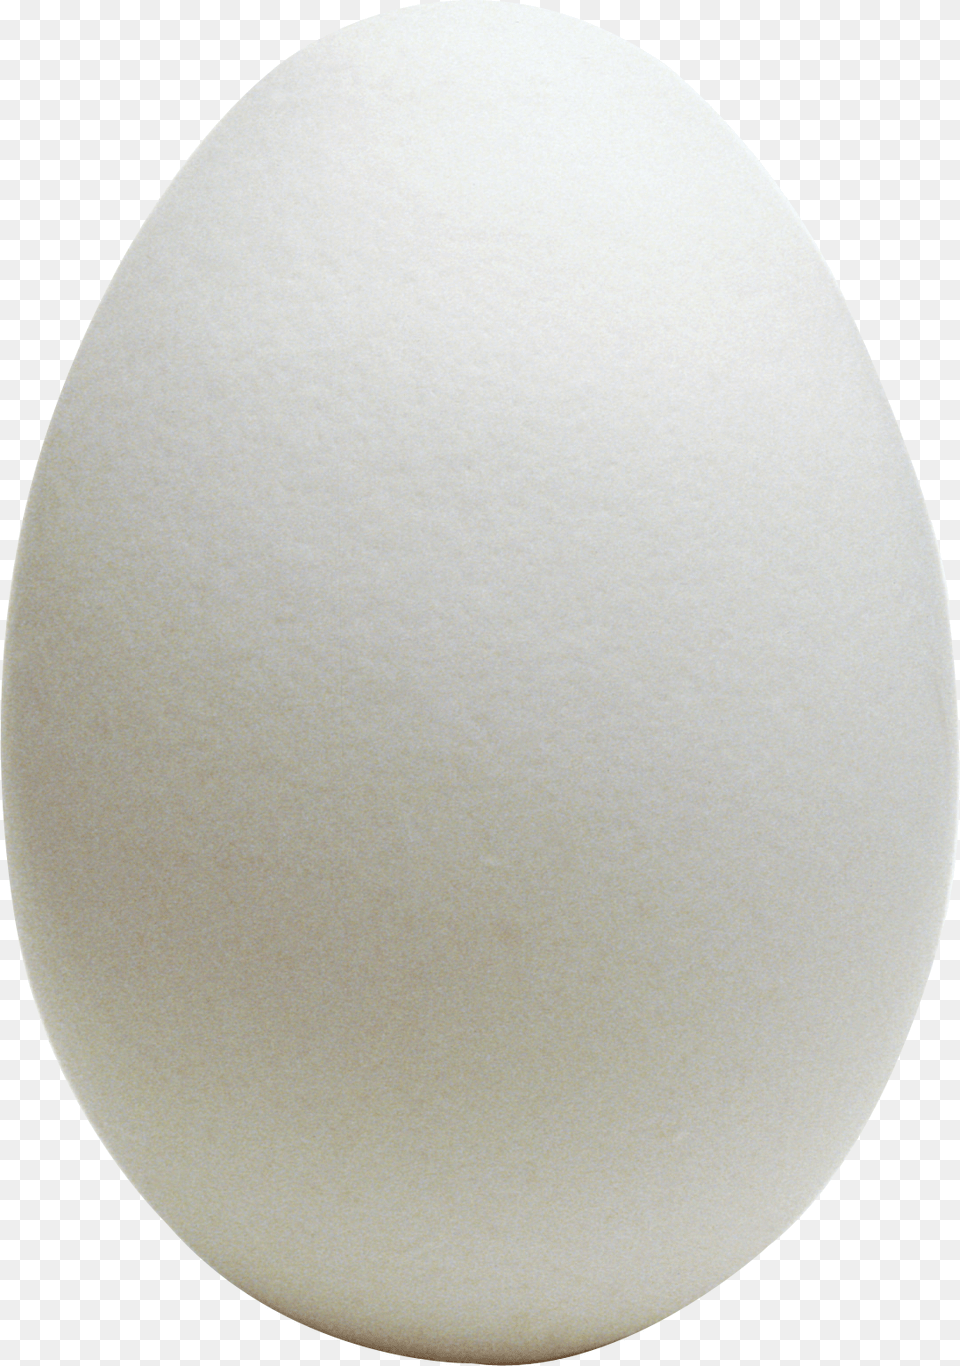 Egg, Food, Easter Egg Png Image